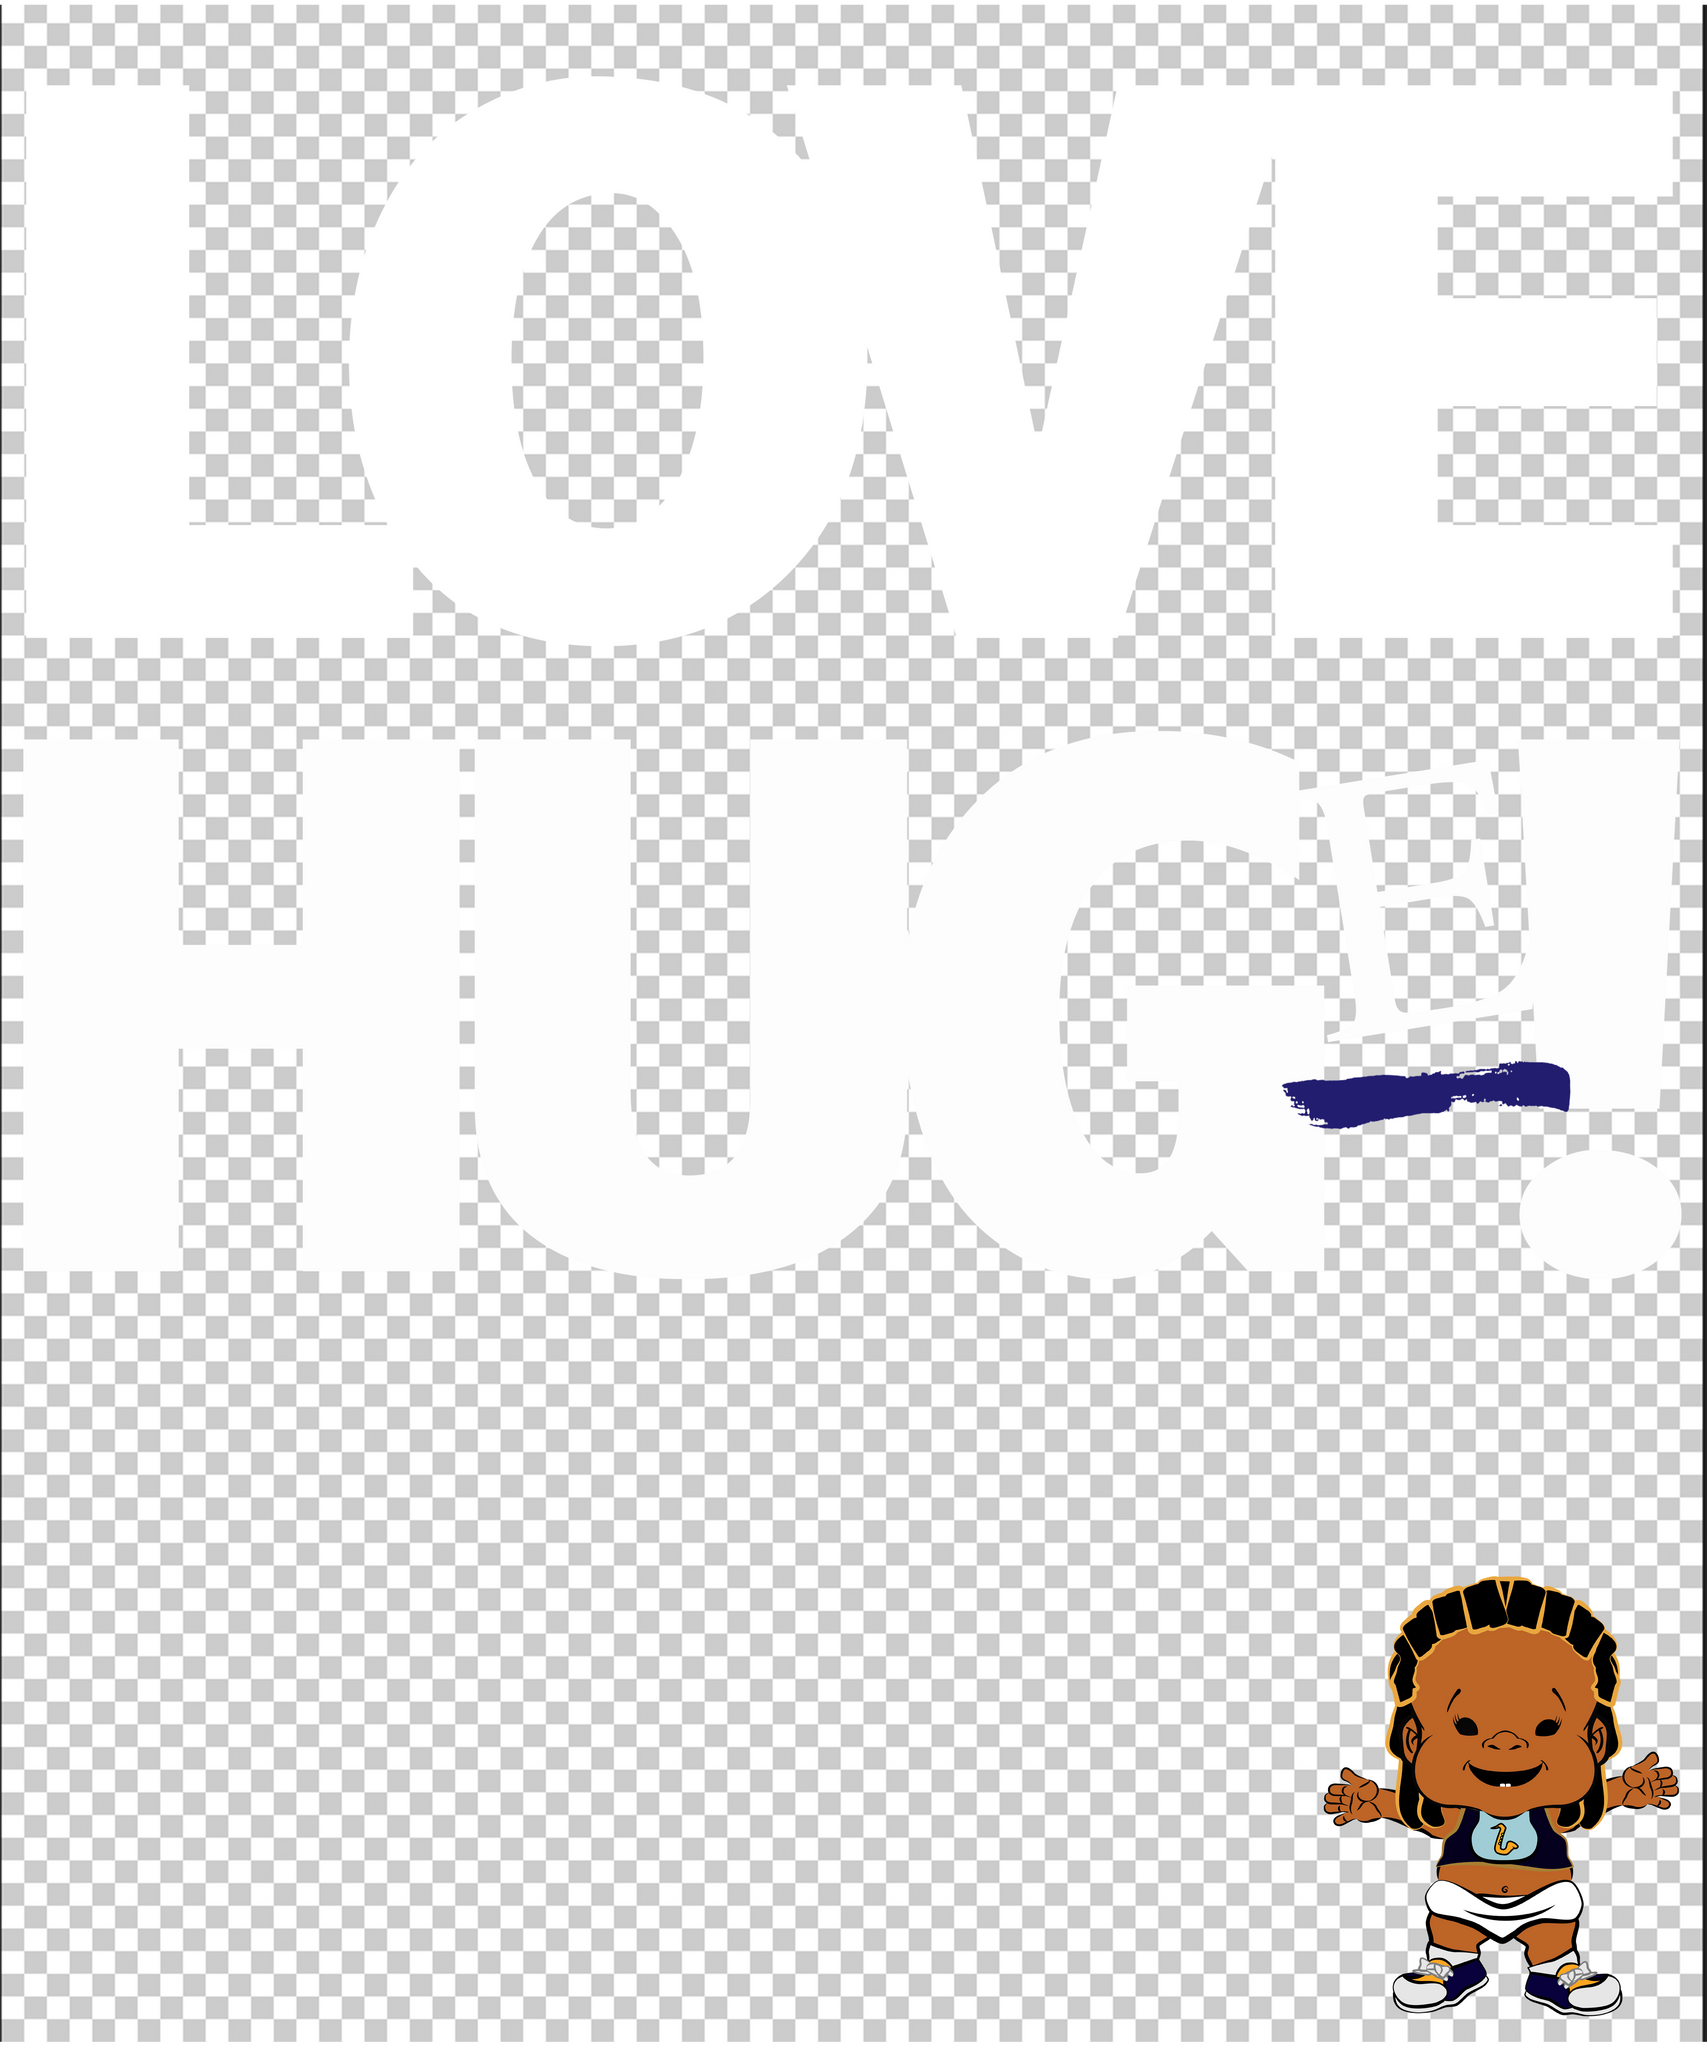 PBLZ1273_Love_Hug(e)_boy_9_Red